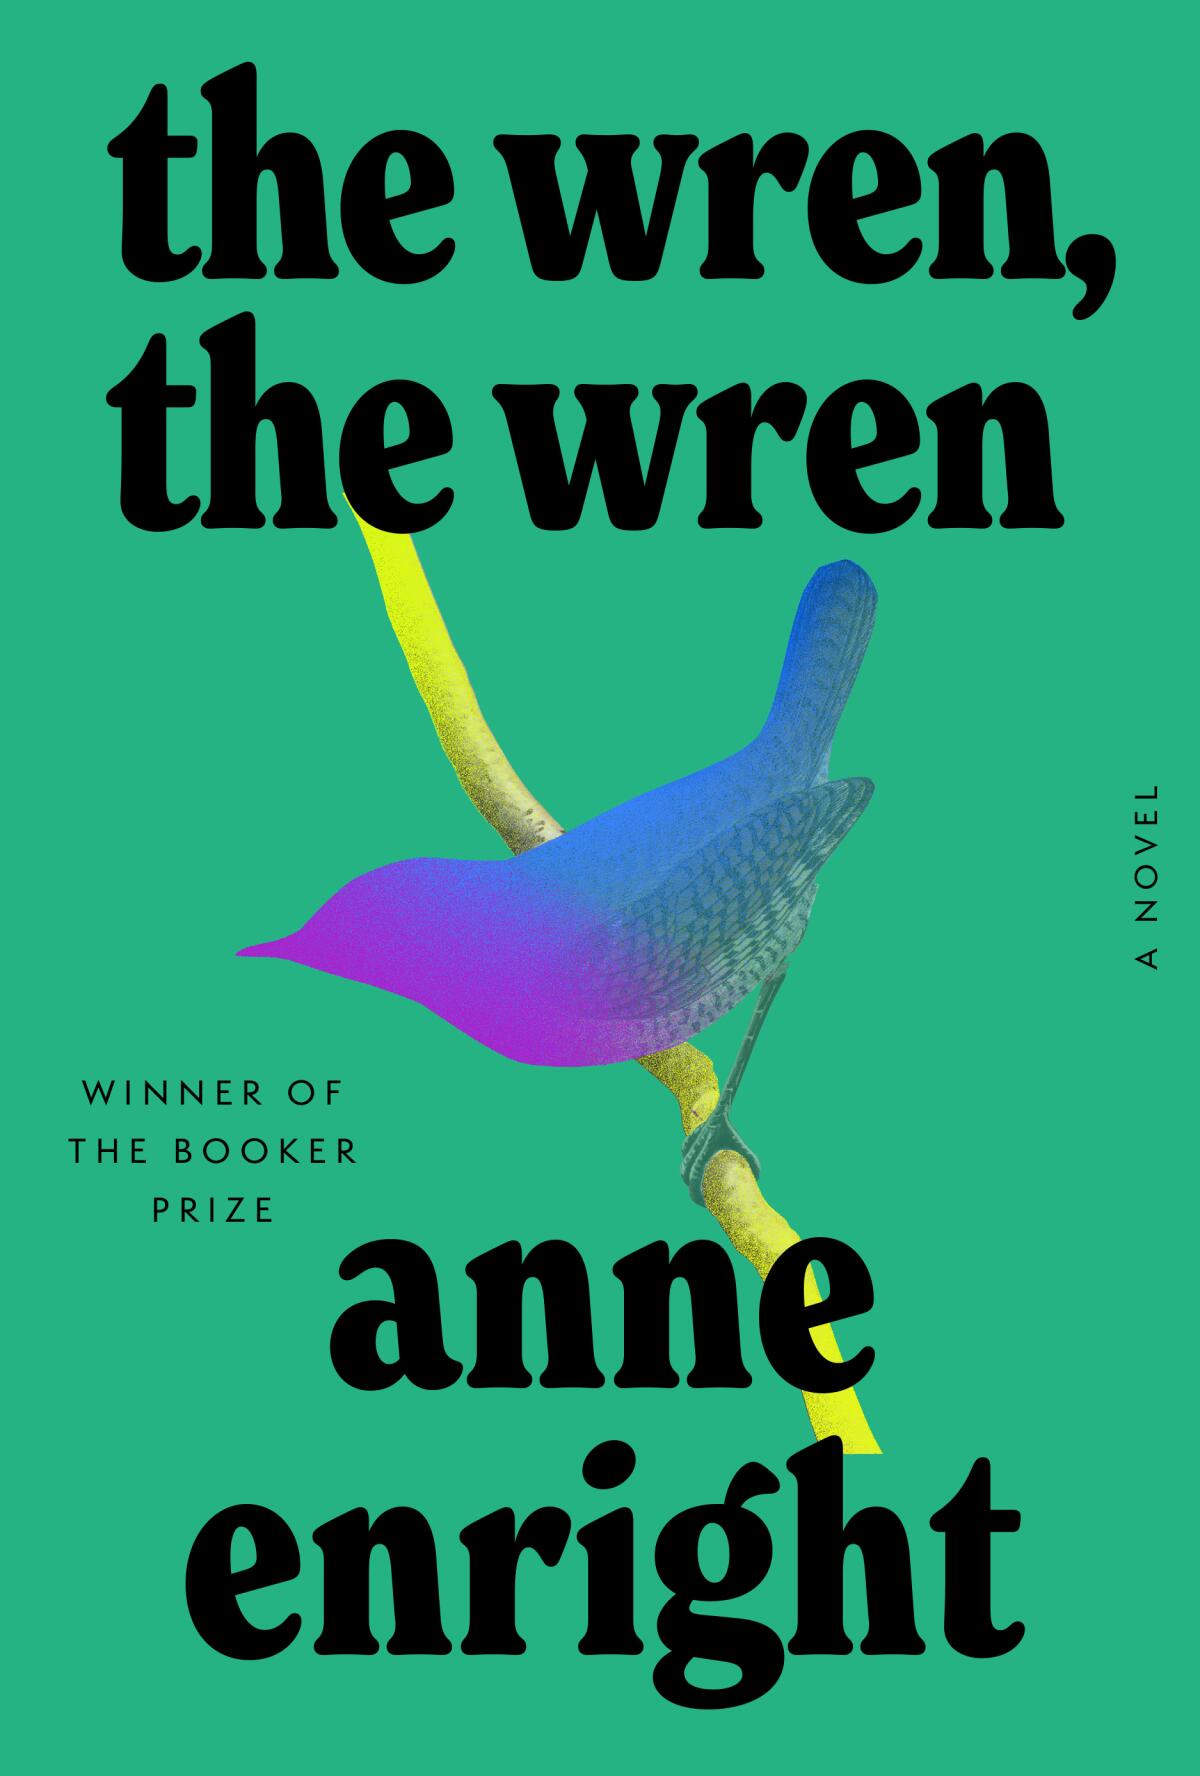 "The Wren, the Wren," by Anne Enright